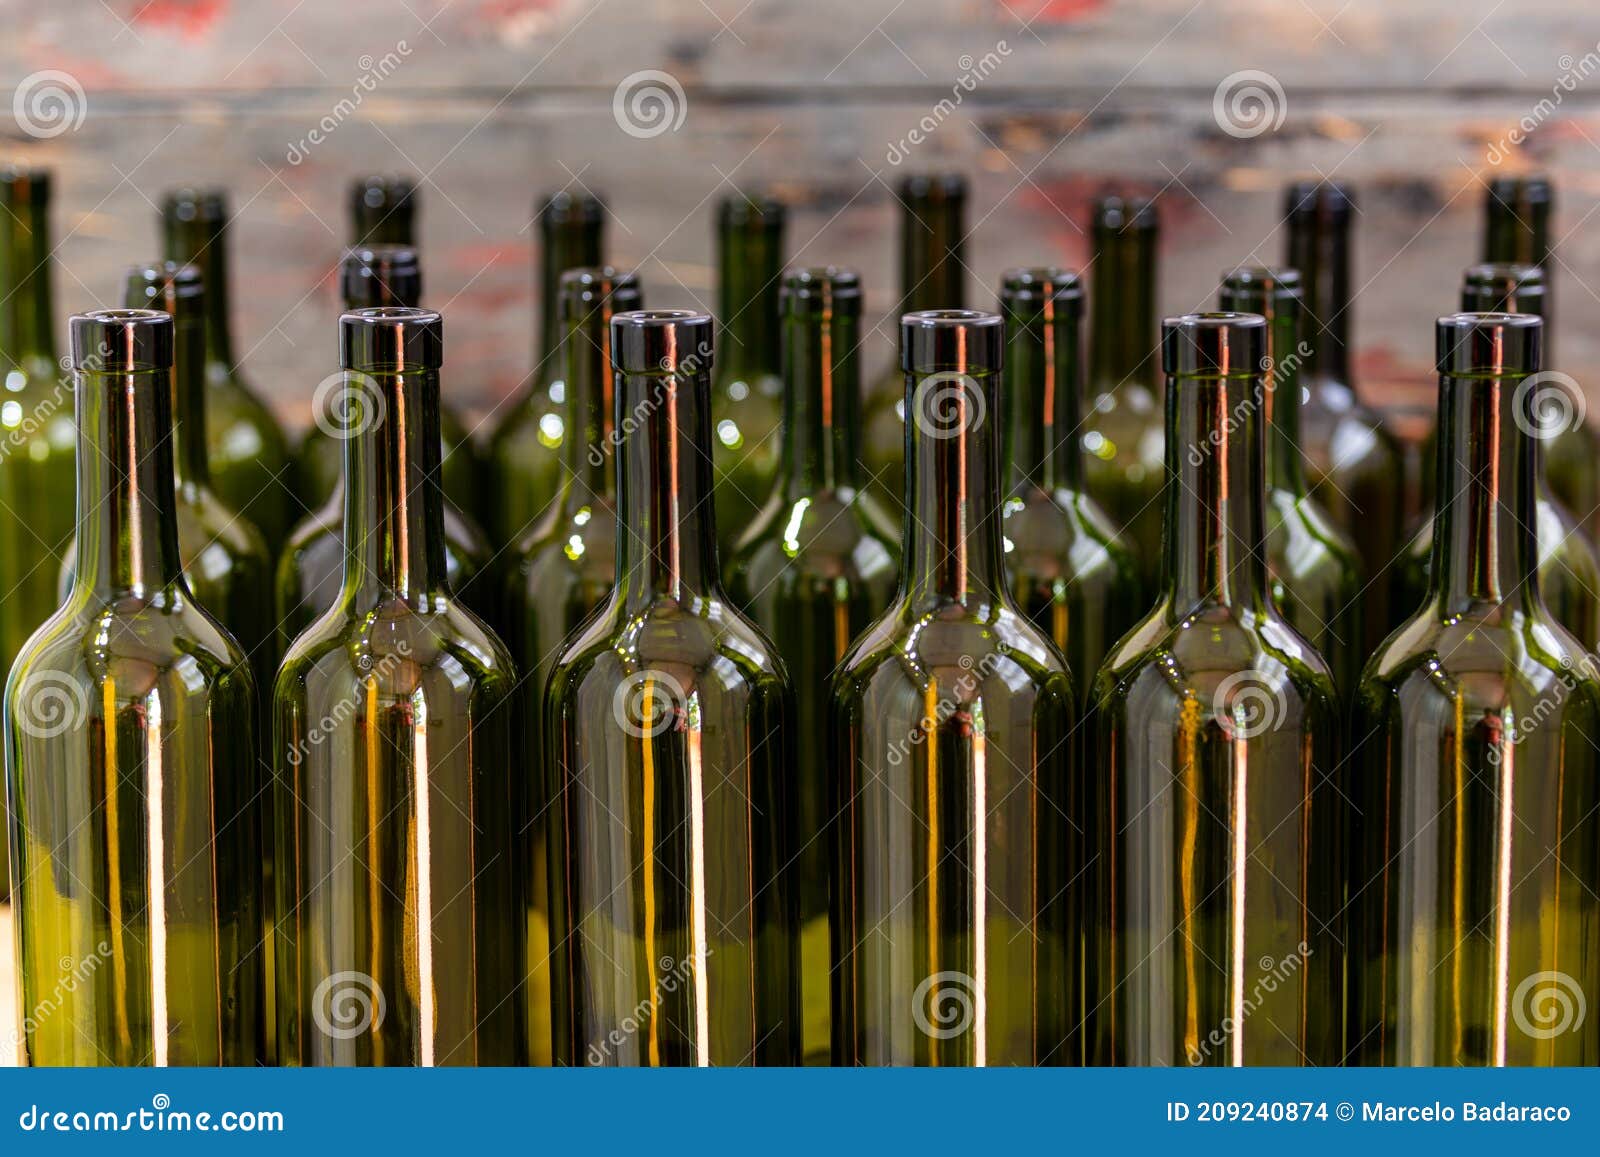 Varen Fascineren Raar Lege En Gekleurde Wijnflessen Stock Foto - Image of wijn, kleur: 209240874